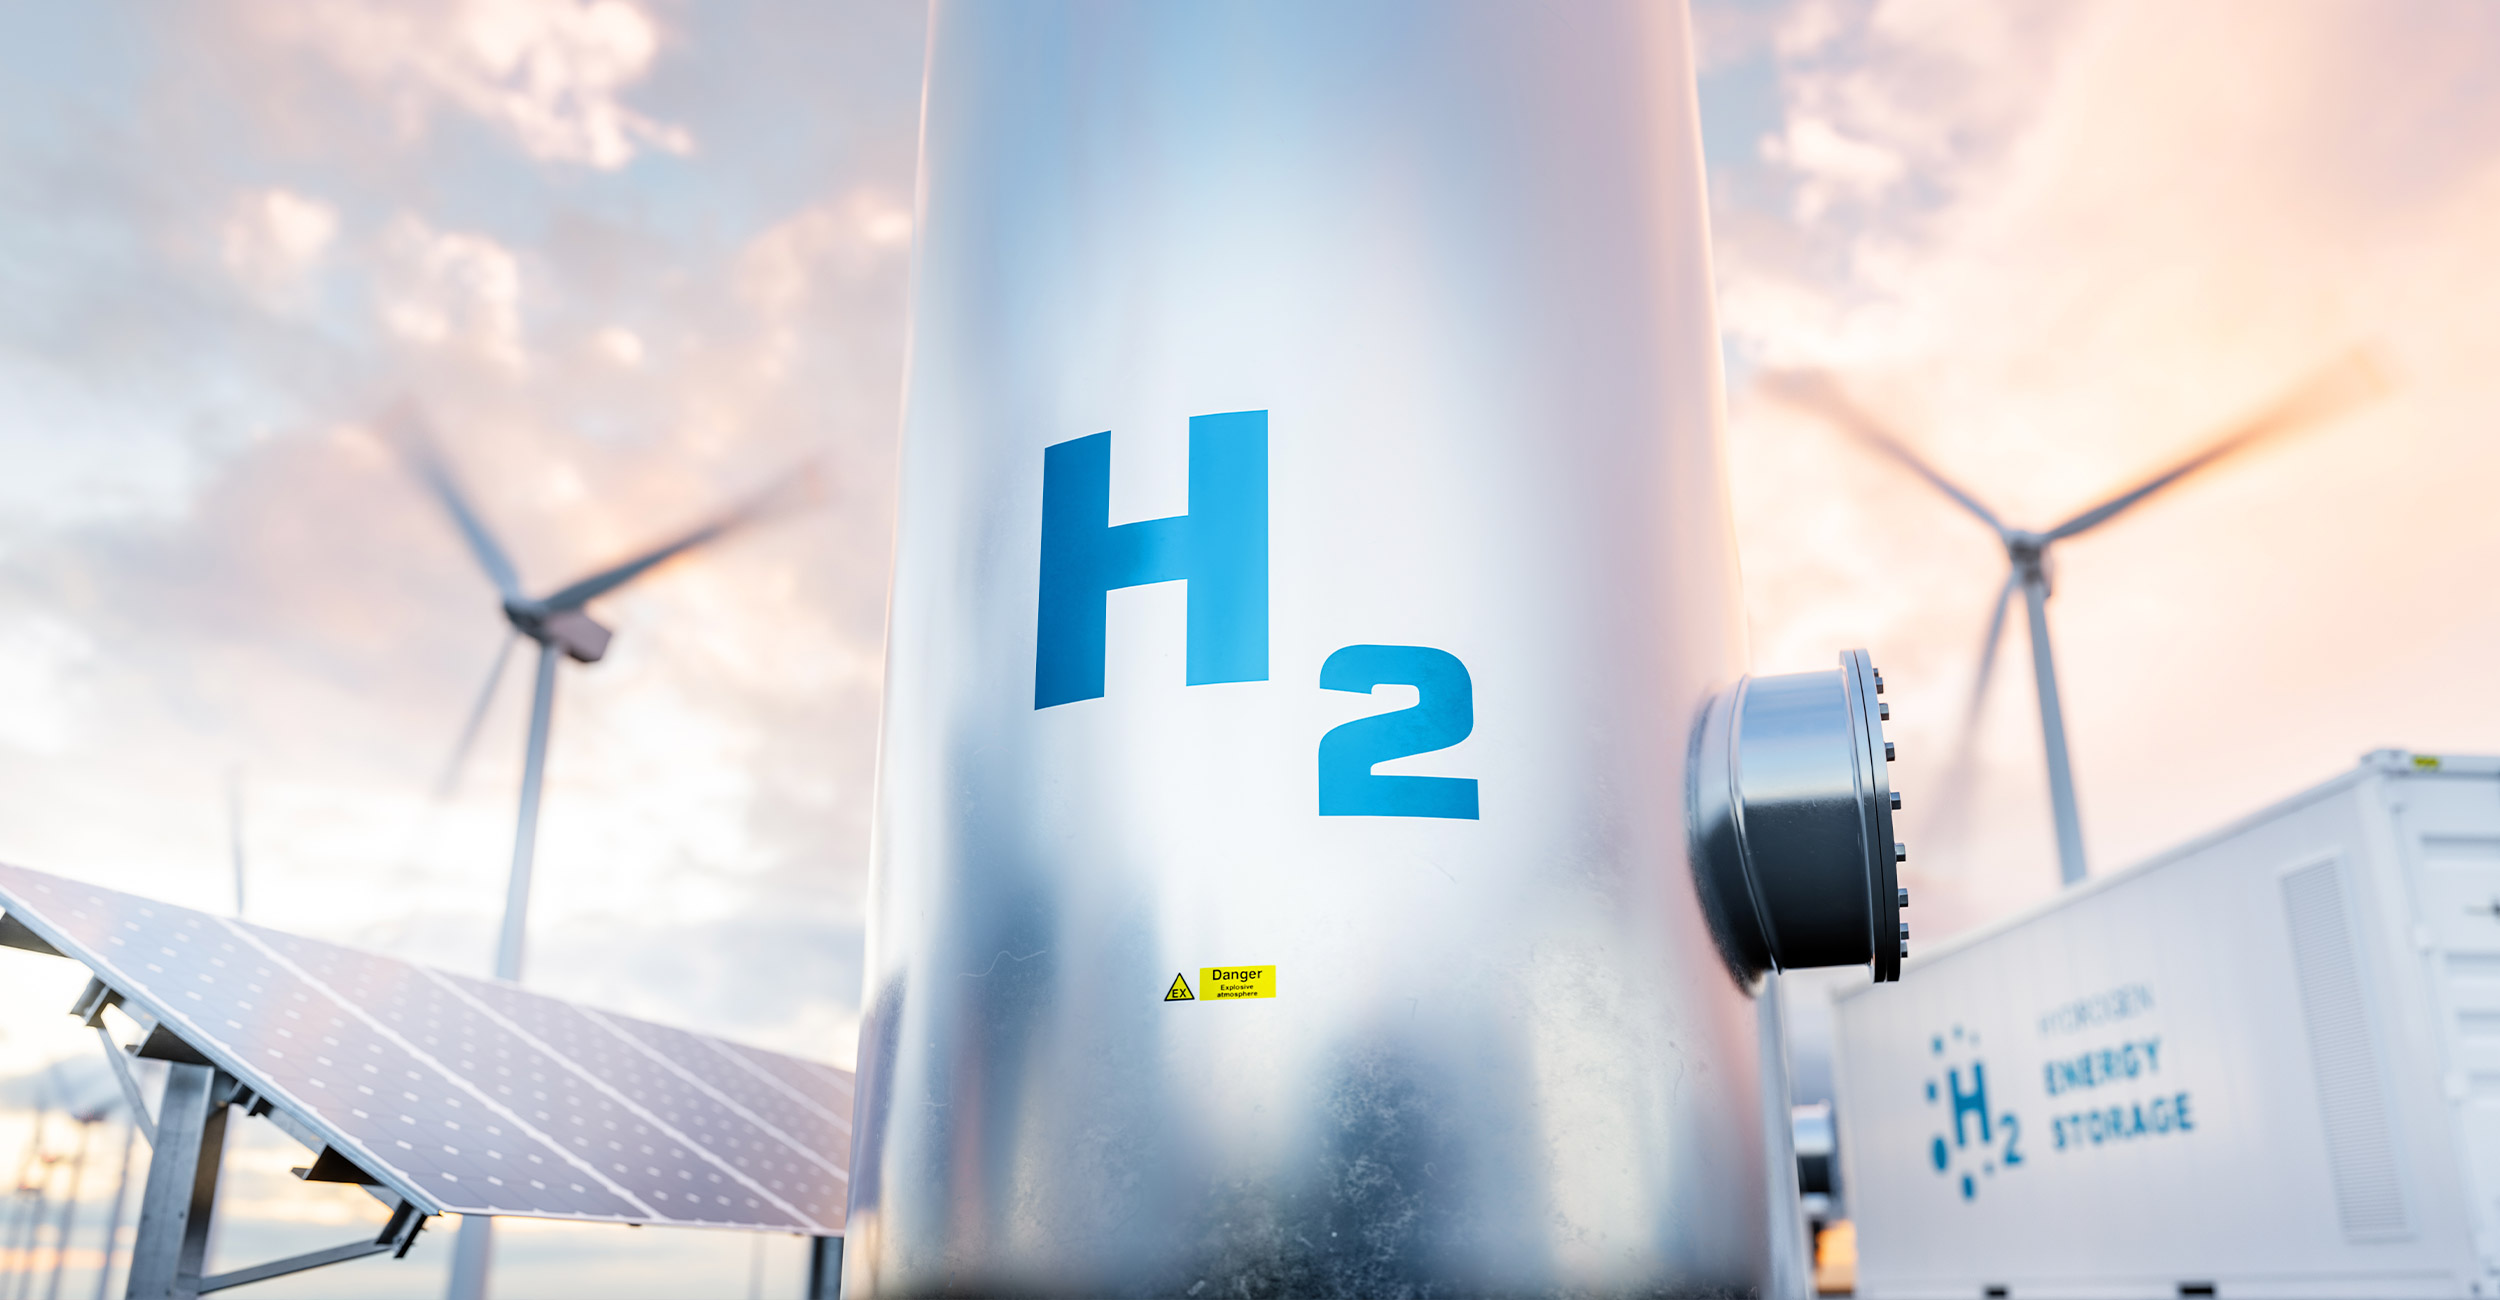 Metastudie Wasserstoff – Auswertung von Energiesystemstudien